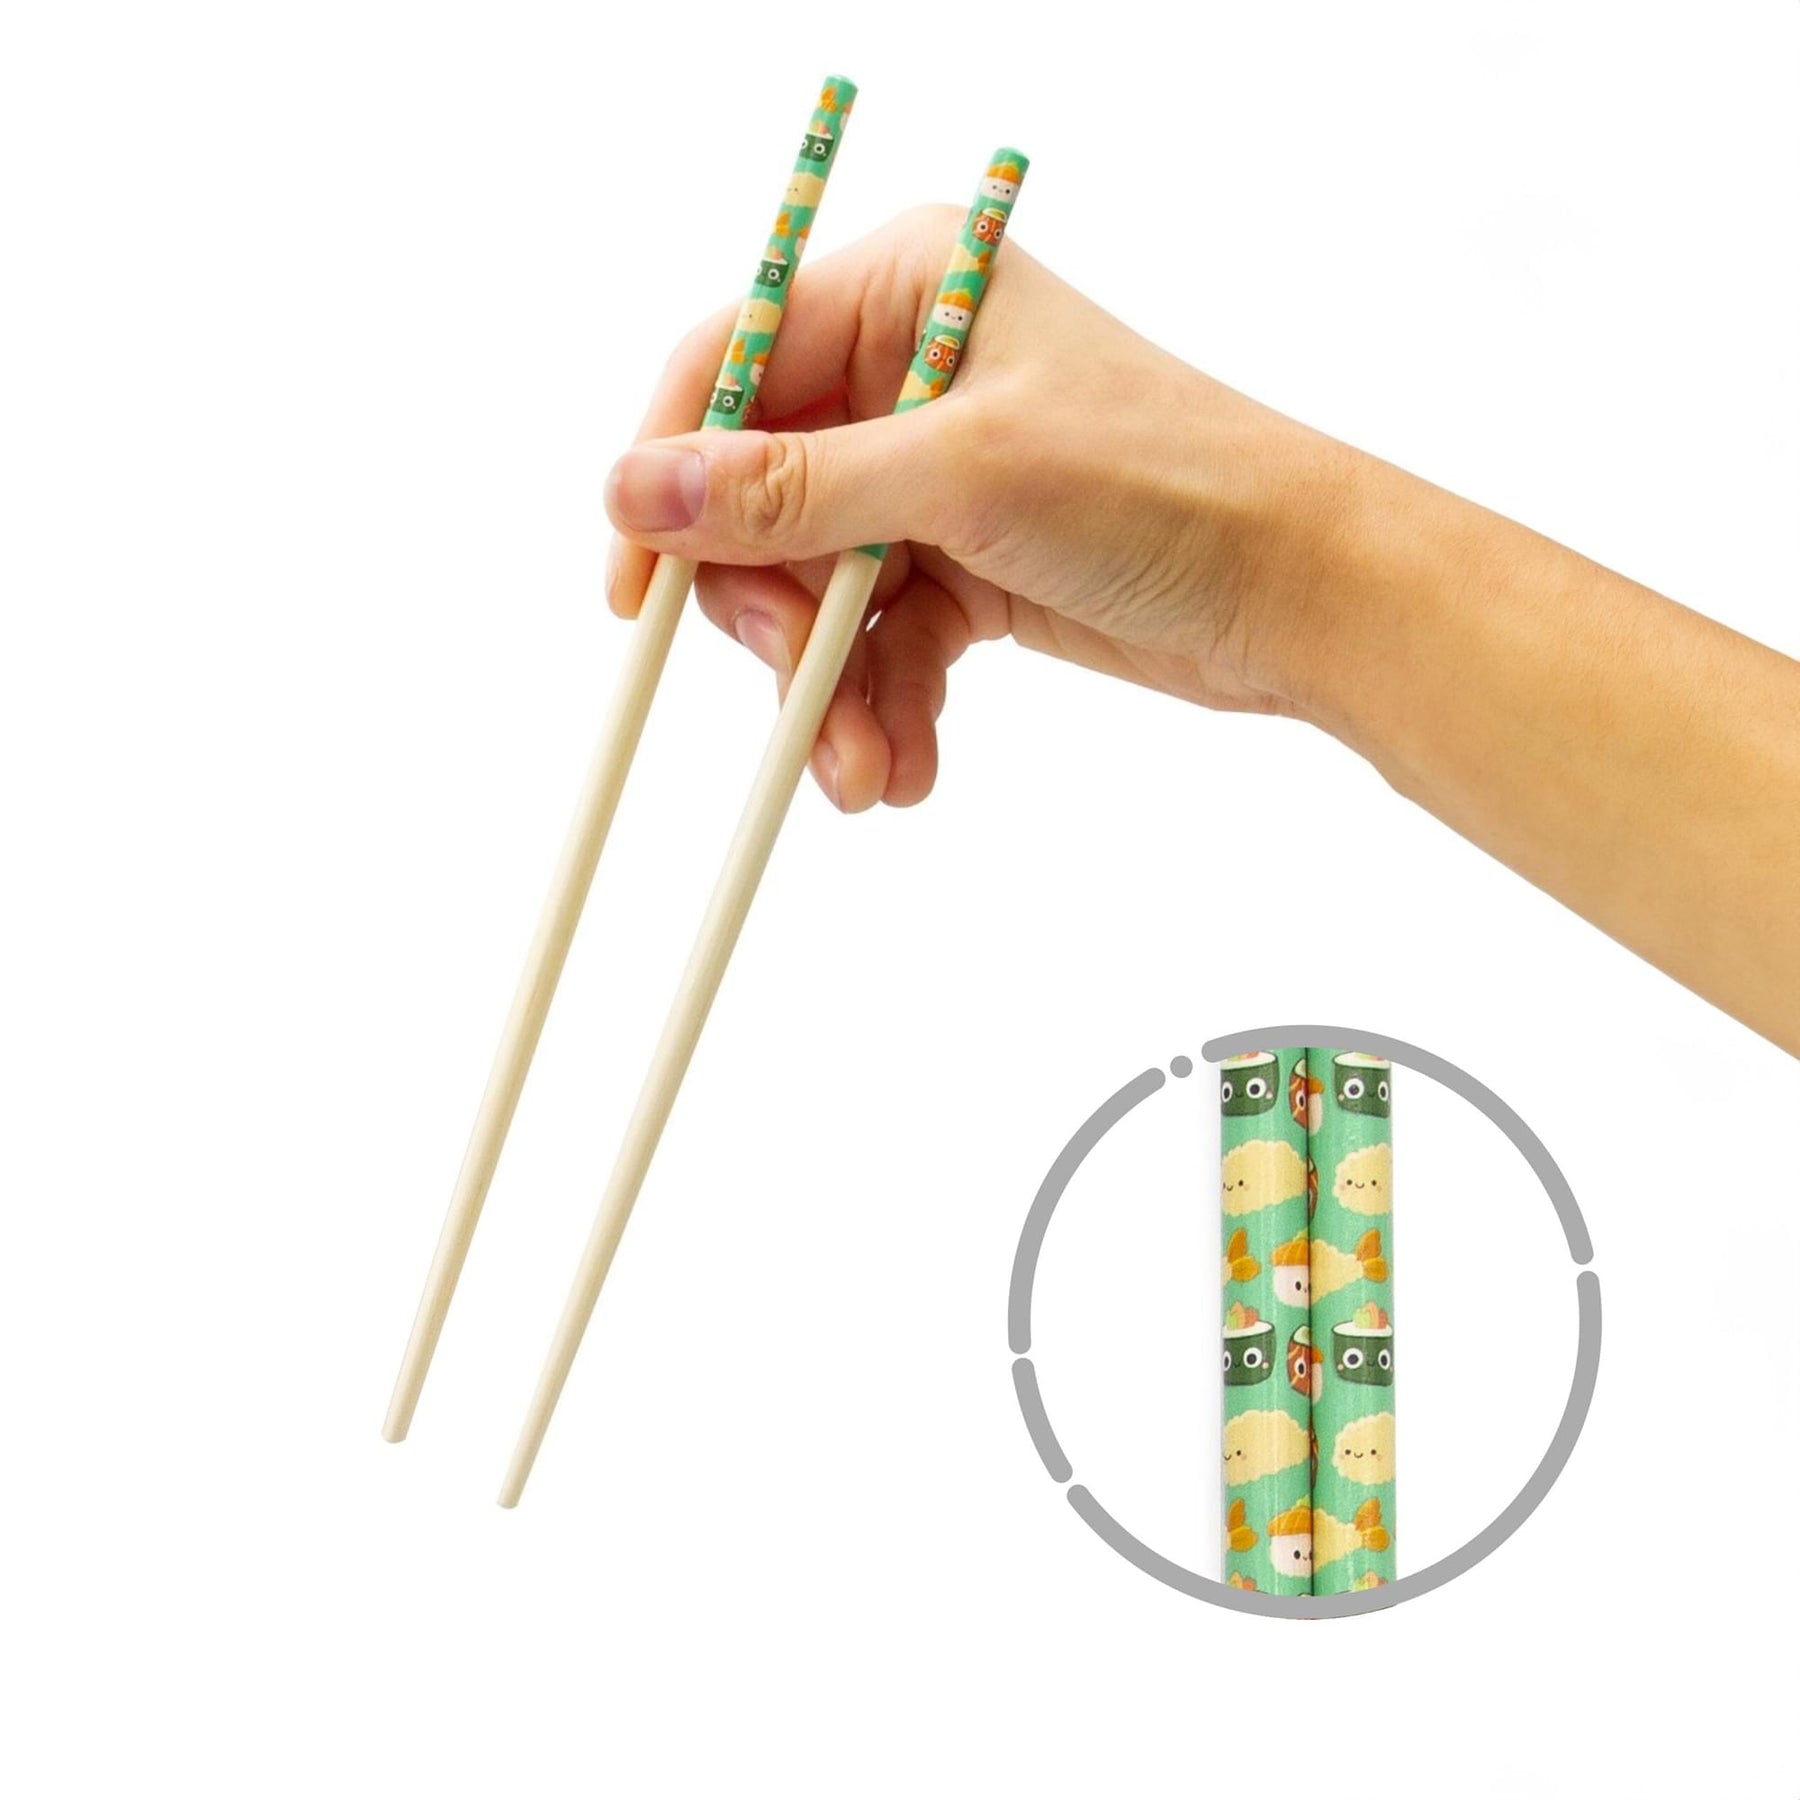 Sushi Time GAMAGO Cast Bamboo Chopsticks | Set of 4